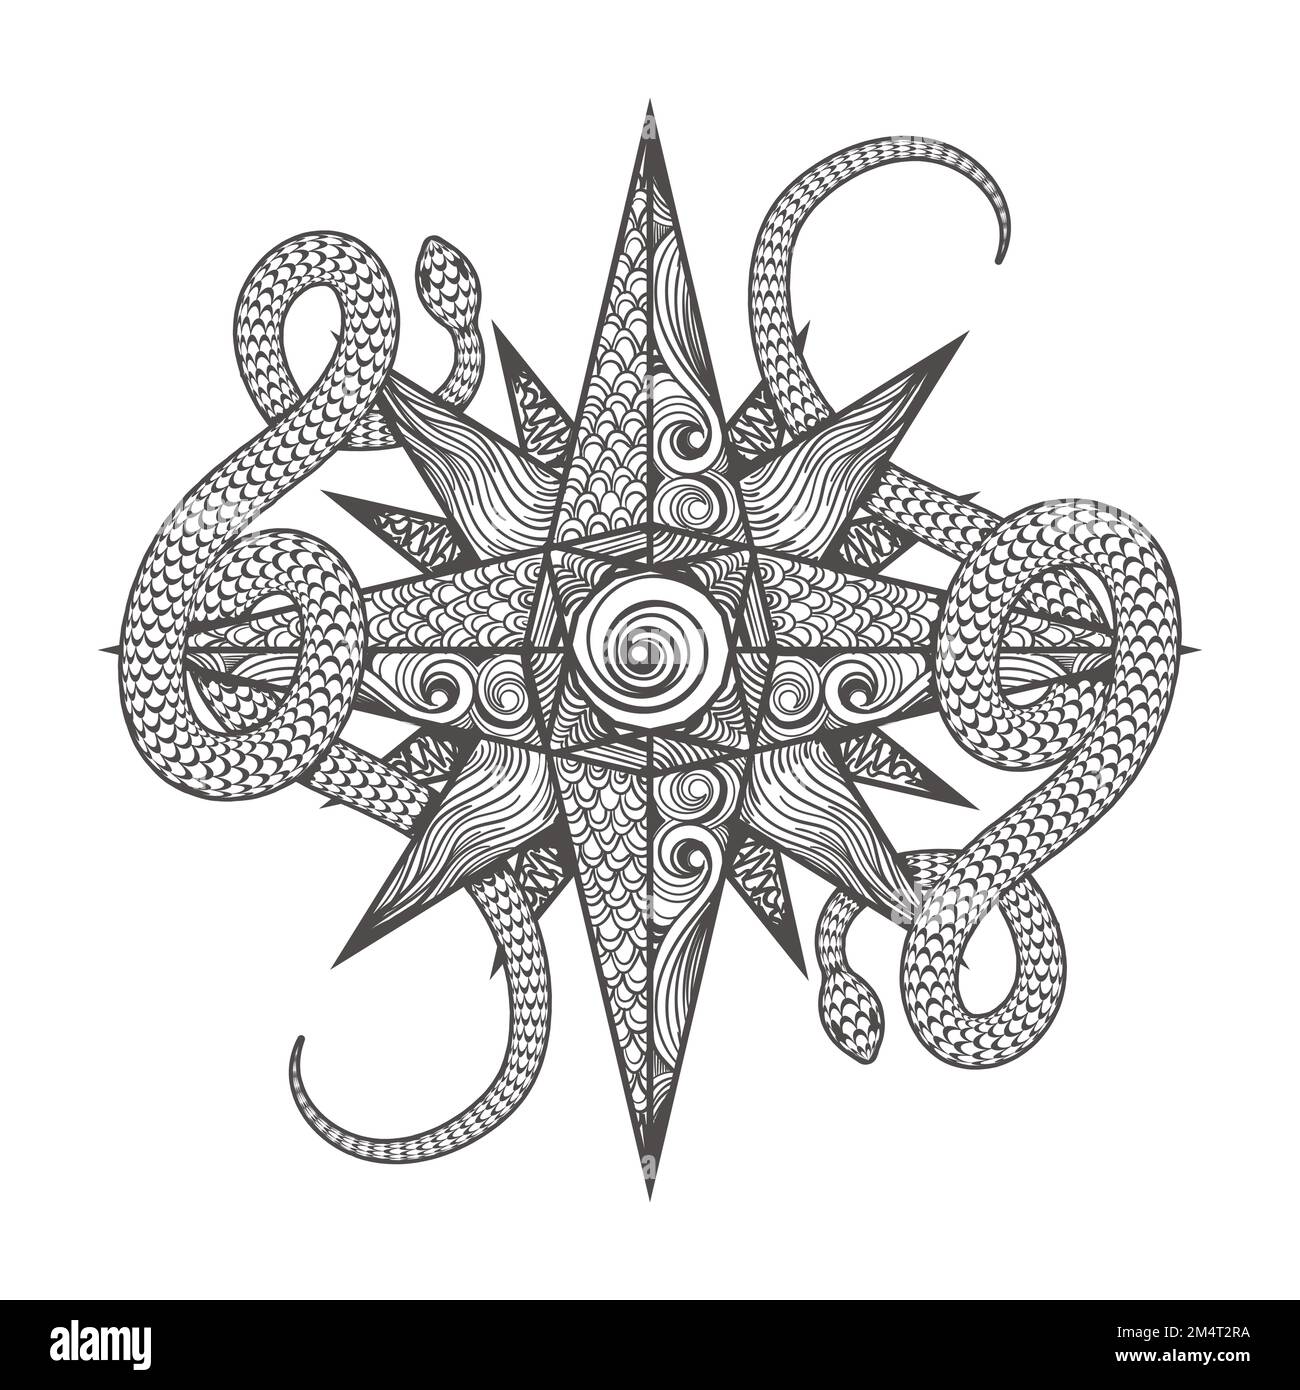 Tatouage de l'Emblem ésotérique d'étoiles et de serpents dessiné dans le style de Zenangle isolé sur blanc. Illustration vectorielle Illustration de Vecteur